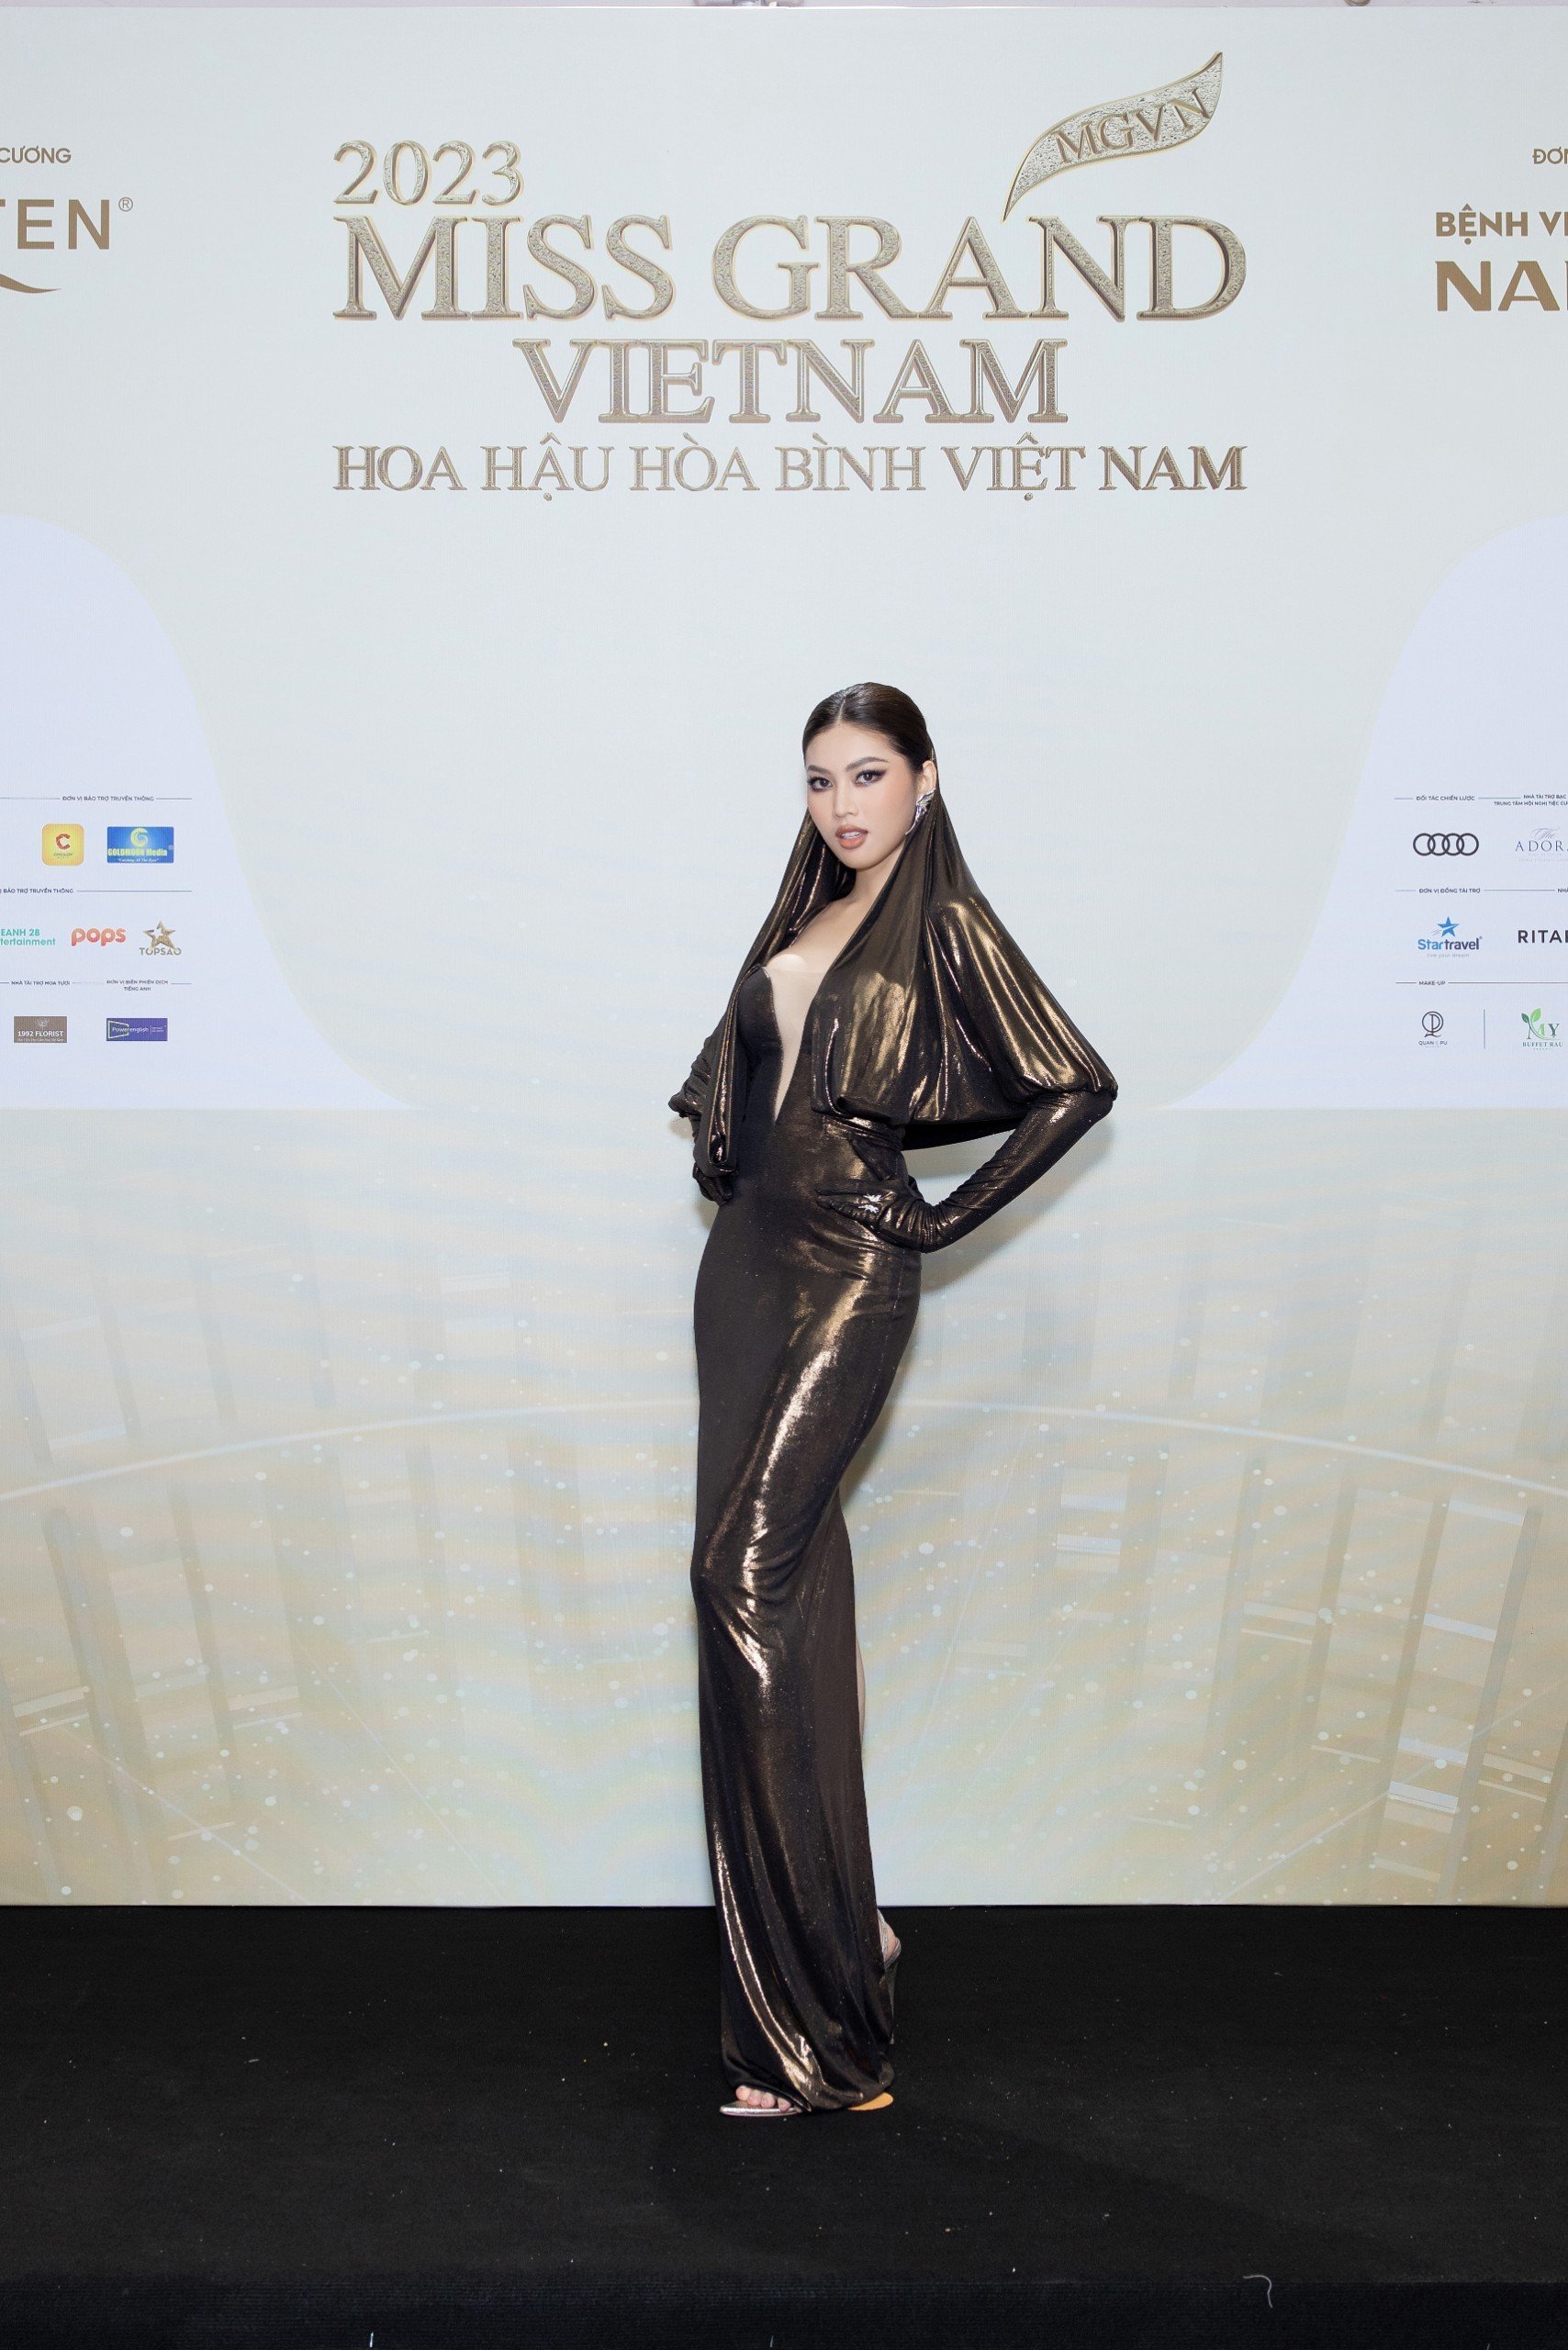 Thảm đỏ chung khảo toàn quốc Miss Grand Vietnam 2023: Huỳnh Minh Kiên khoe đường cong, Thuỳ Tiên kín đáo vẫn đẹp - ảnh 7